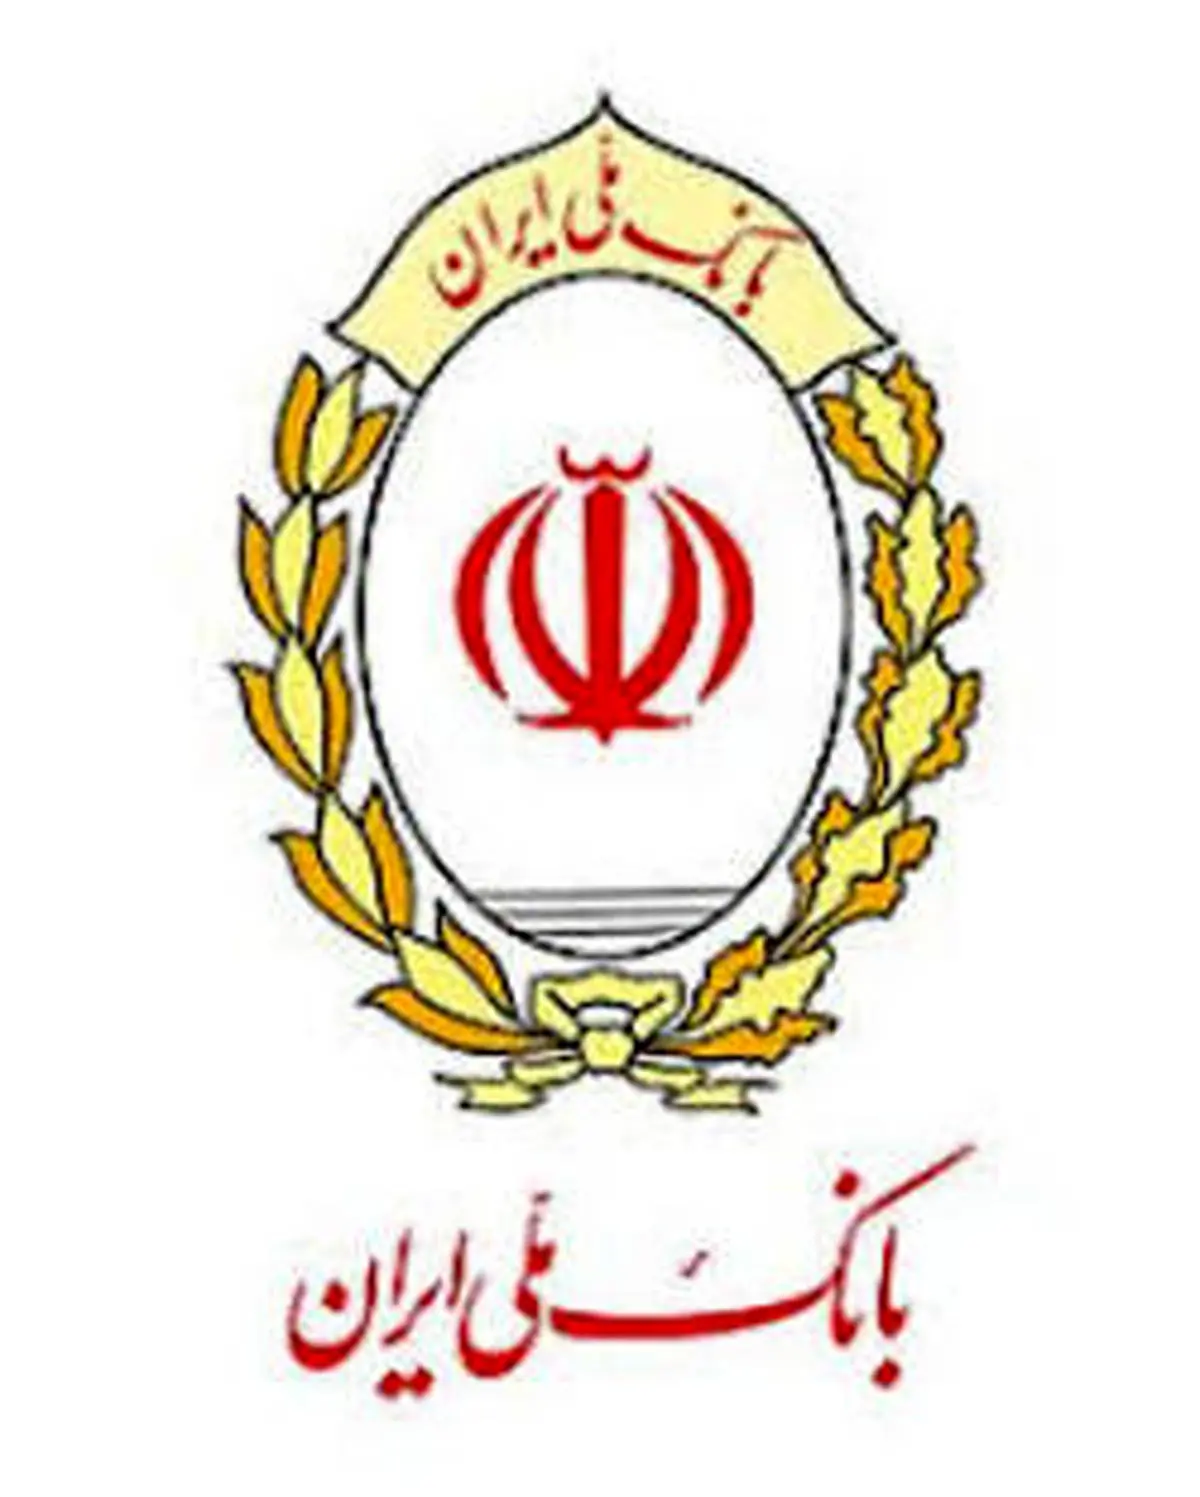 خرید کالای بادوام داخلی با تسهیلات بانک ملی ایران